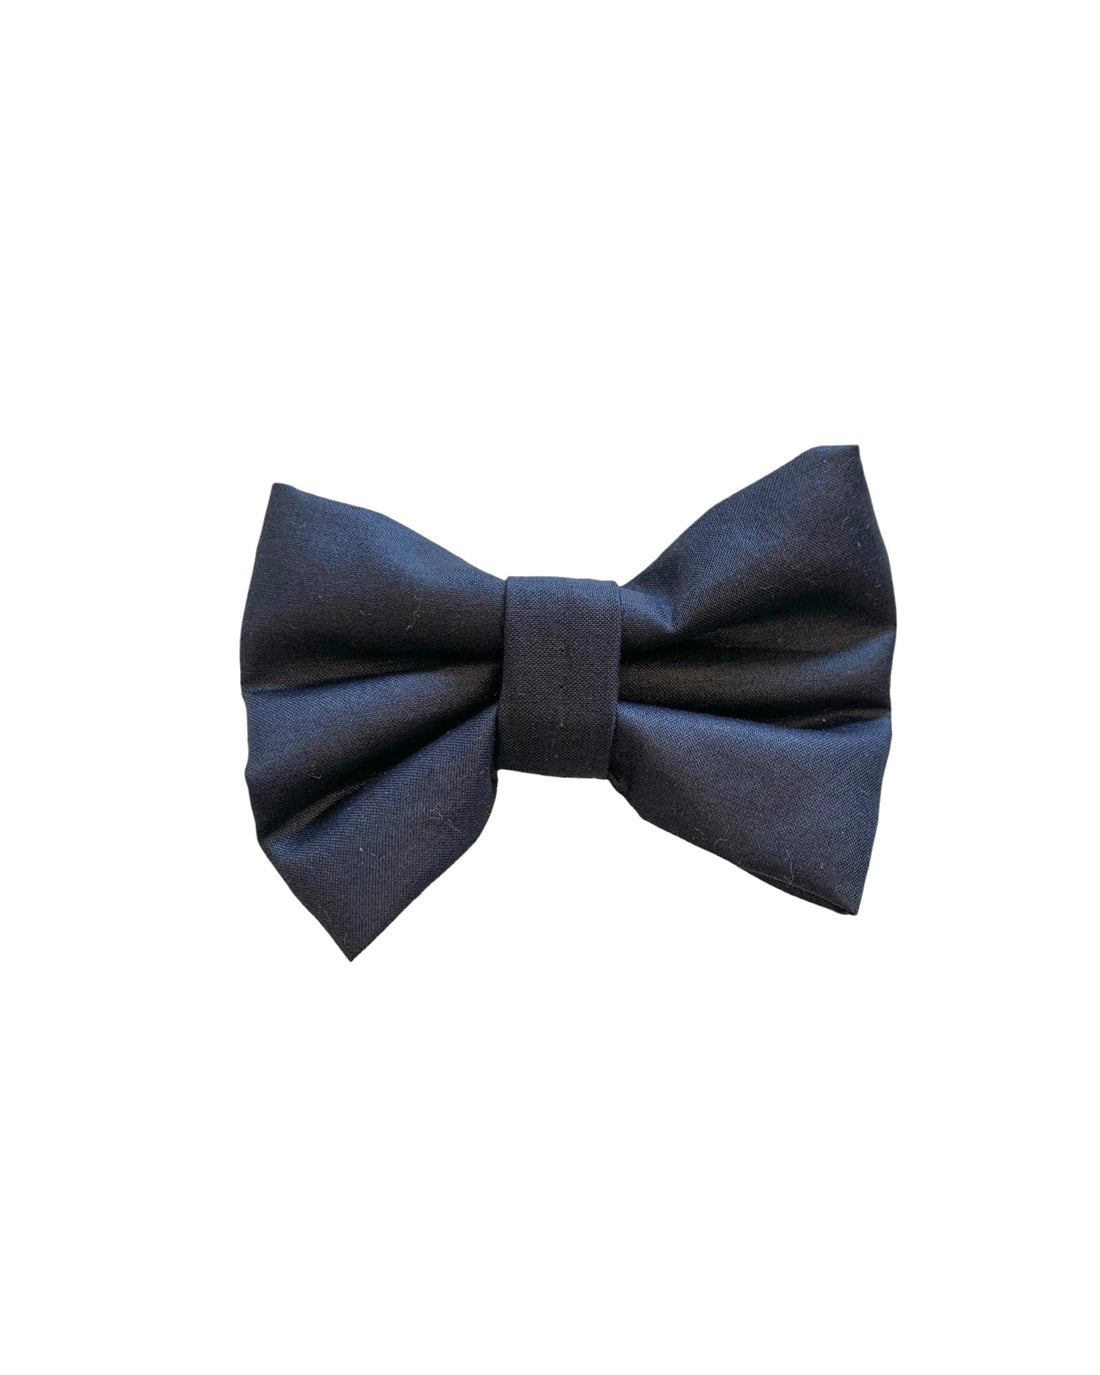 A bow tie